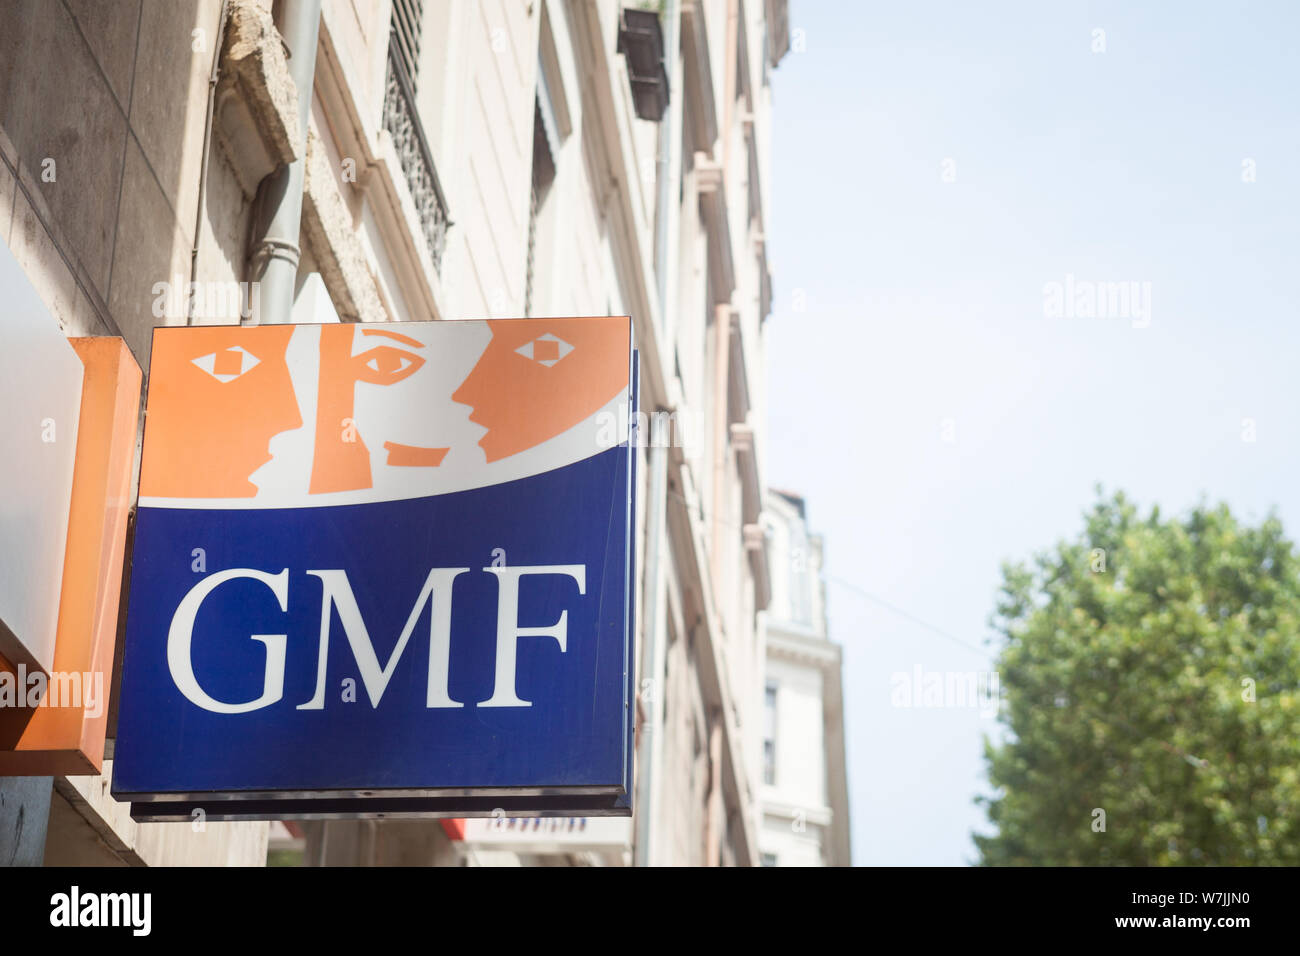 Gmf Banque de photographies et d'images à haute résolution - Alamy